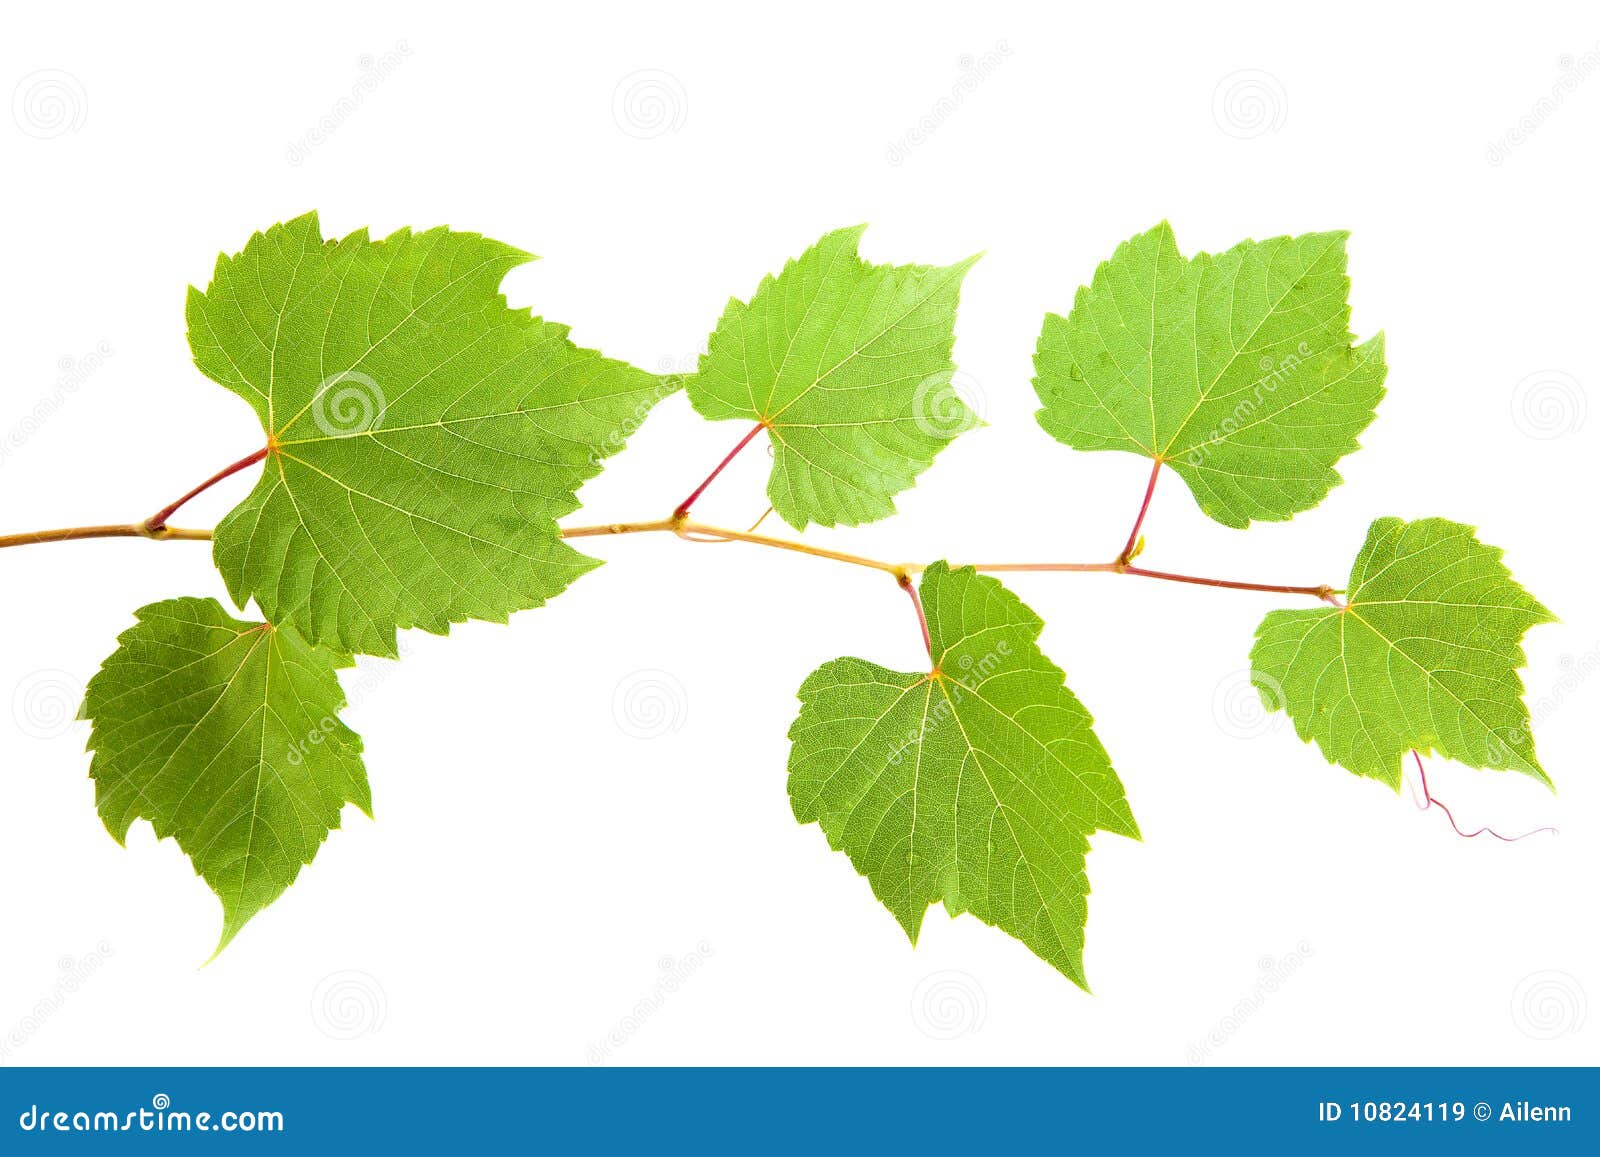 vine-leaves-10824119.jpg